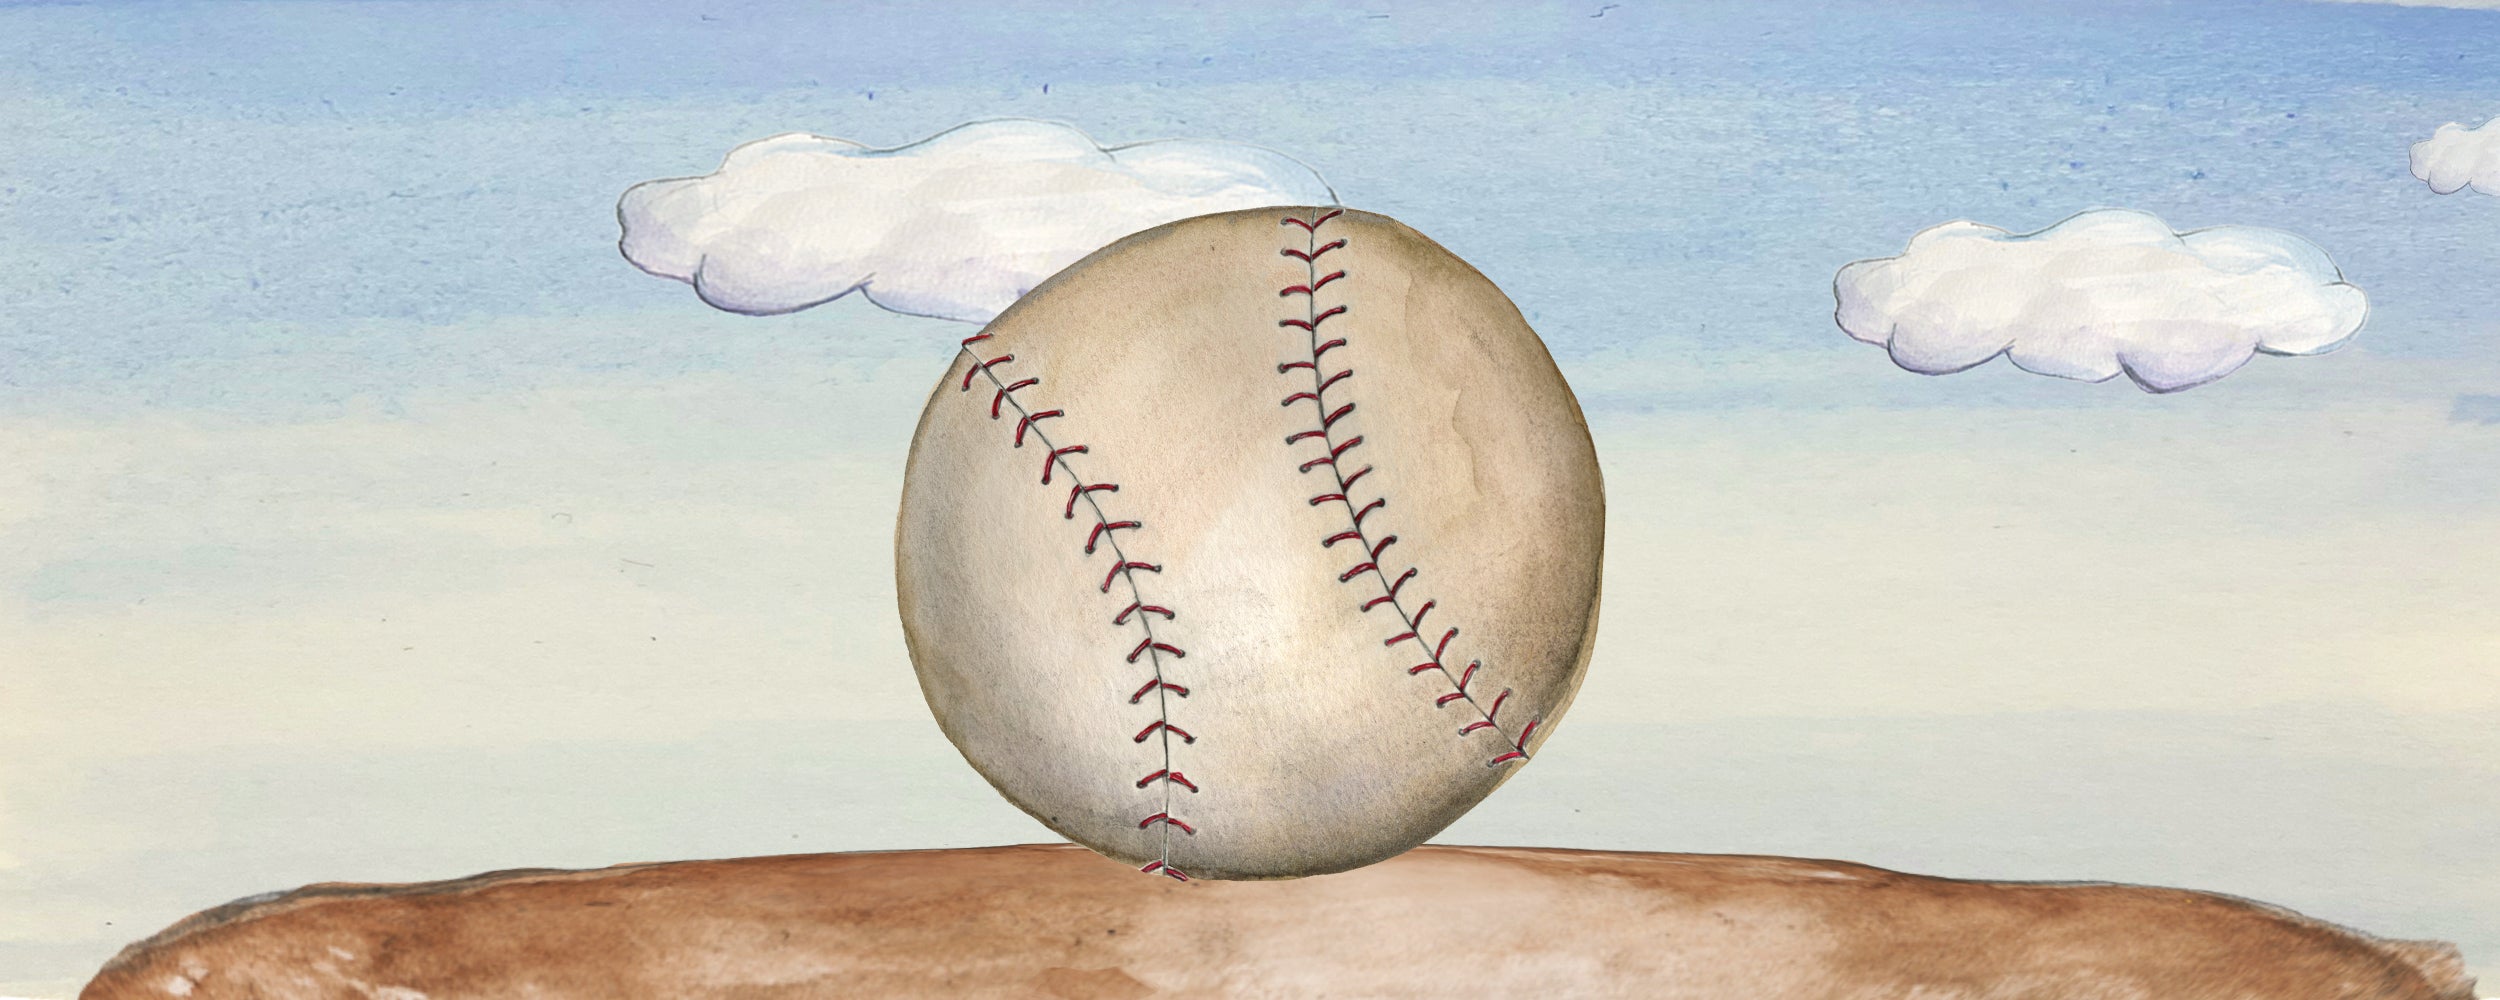 Stitched Baseball